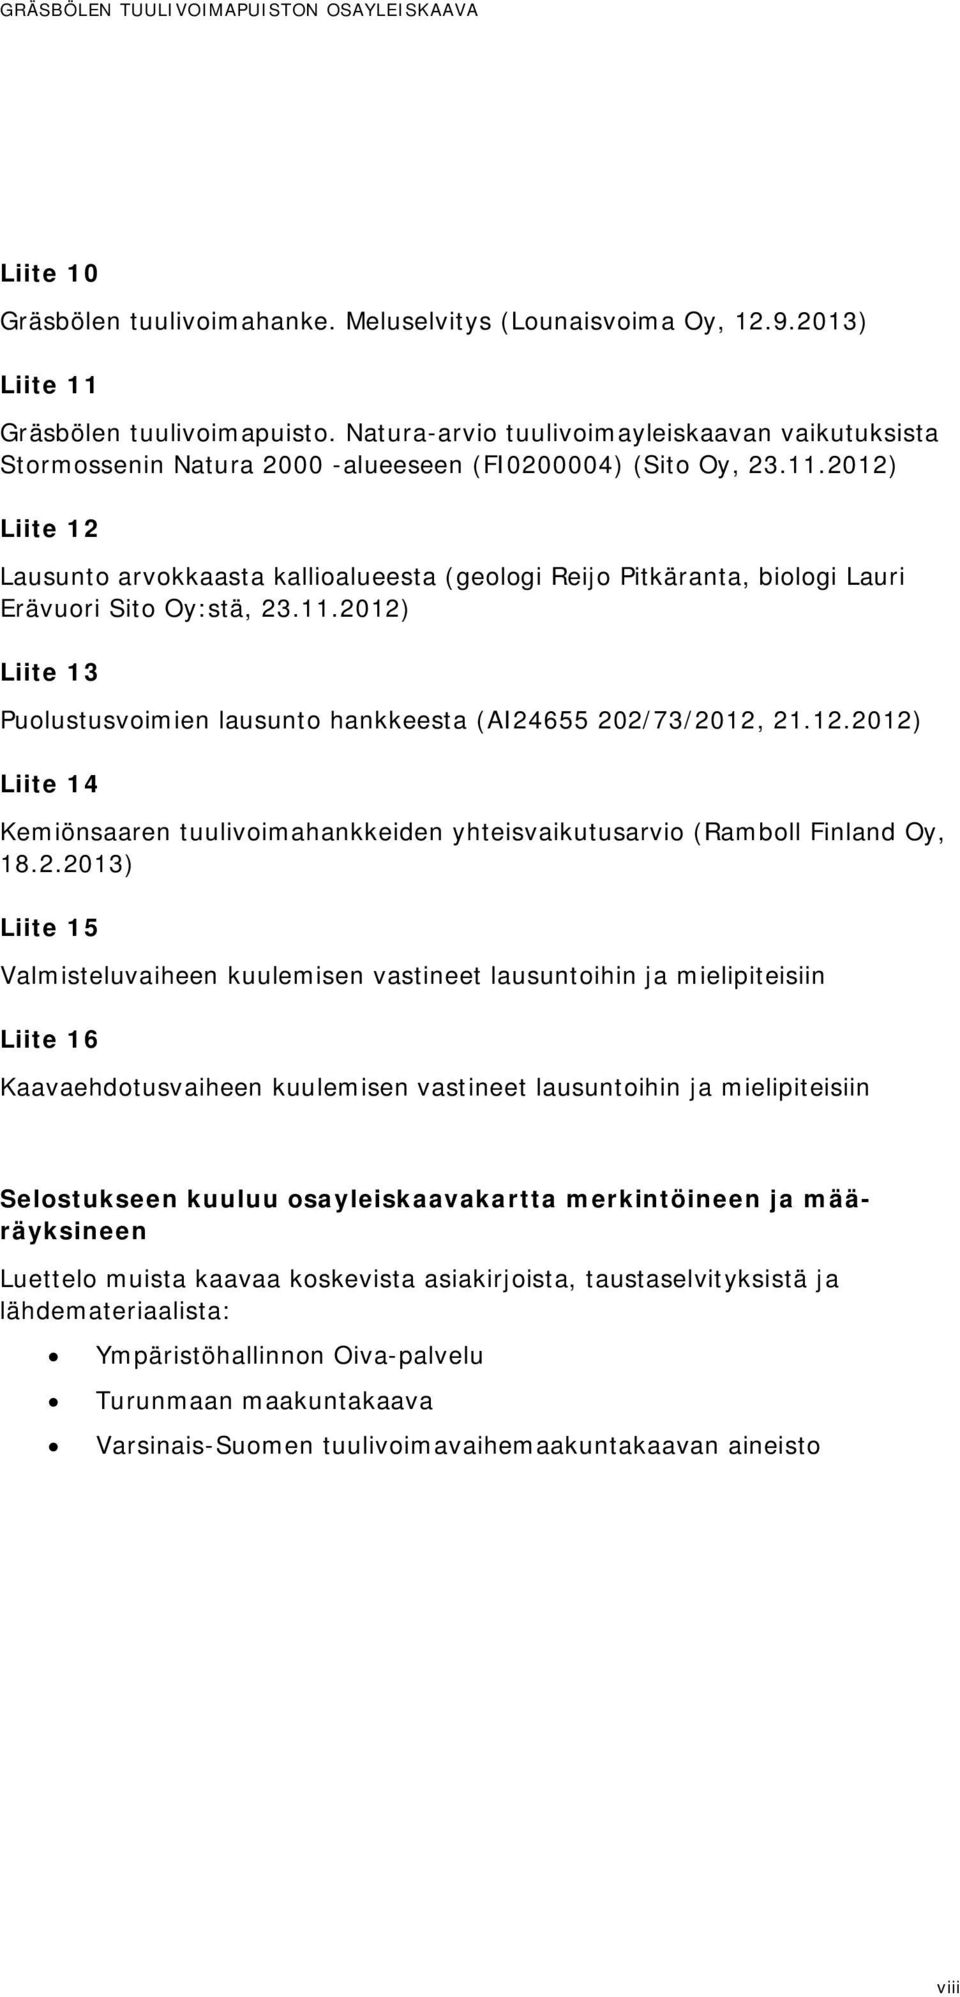 2012) Liite 12 Lausunto arvokkaasta kallioalueesta (geologi Reijo Pitkäranta, biologi Lauri Erävuori Sito Oy:stä, 23.11.2012) Liite 13 Puolustusvoimien lausunto hankkeesta (AI24655 202/73/2012, 21.12.2012) Liite 14 Kemiönsaaren tuulivoimahankkeiden yhteisvaikutusarvio (Ramboll Finland Oy, 18.